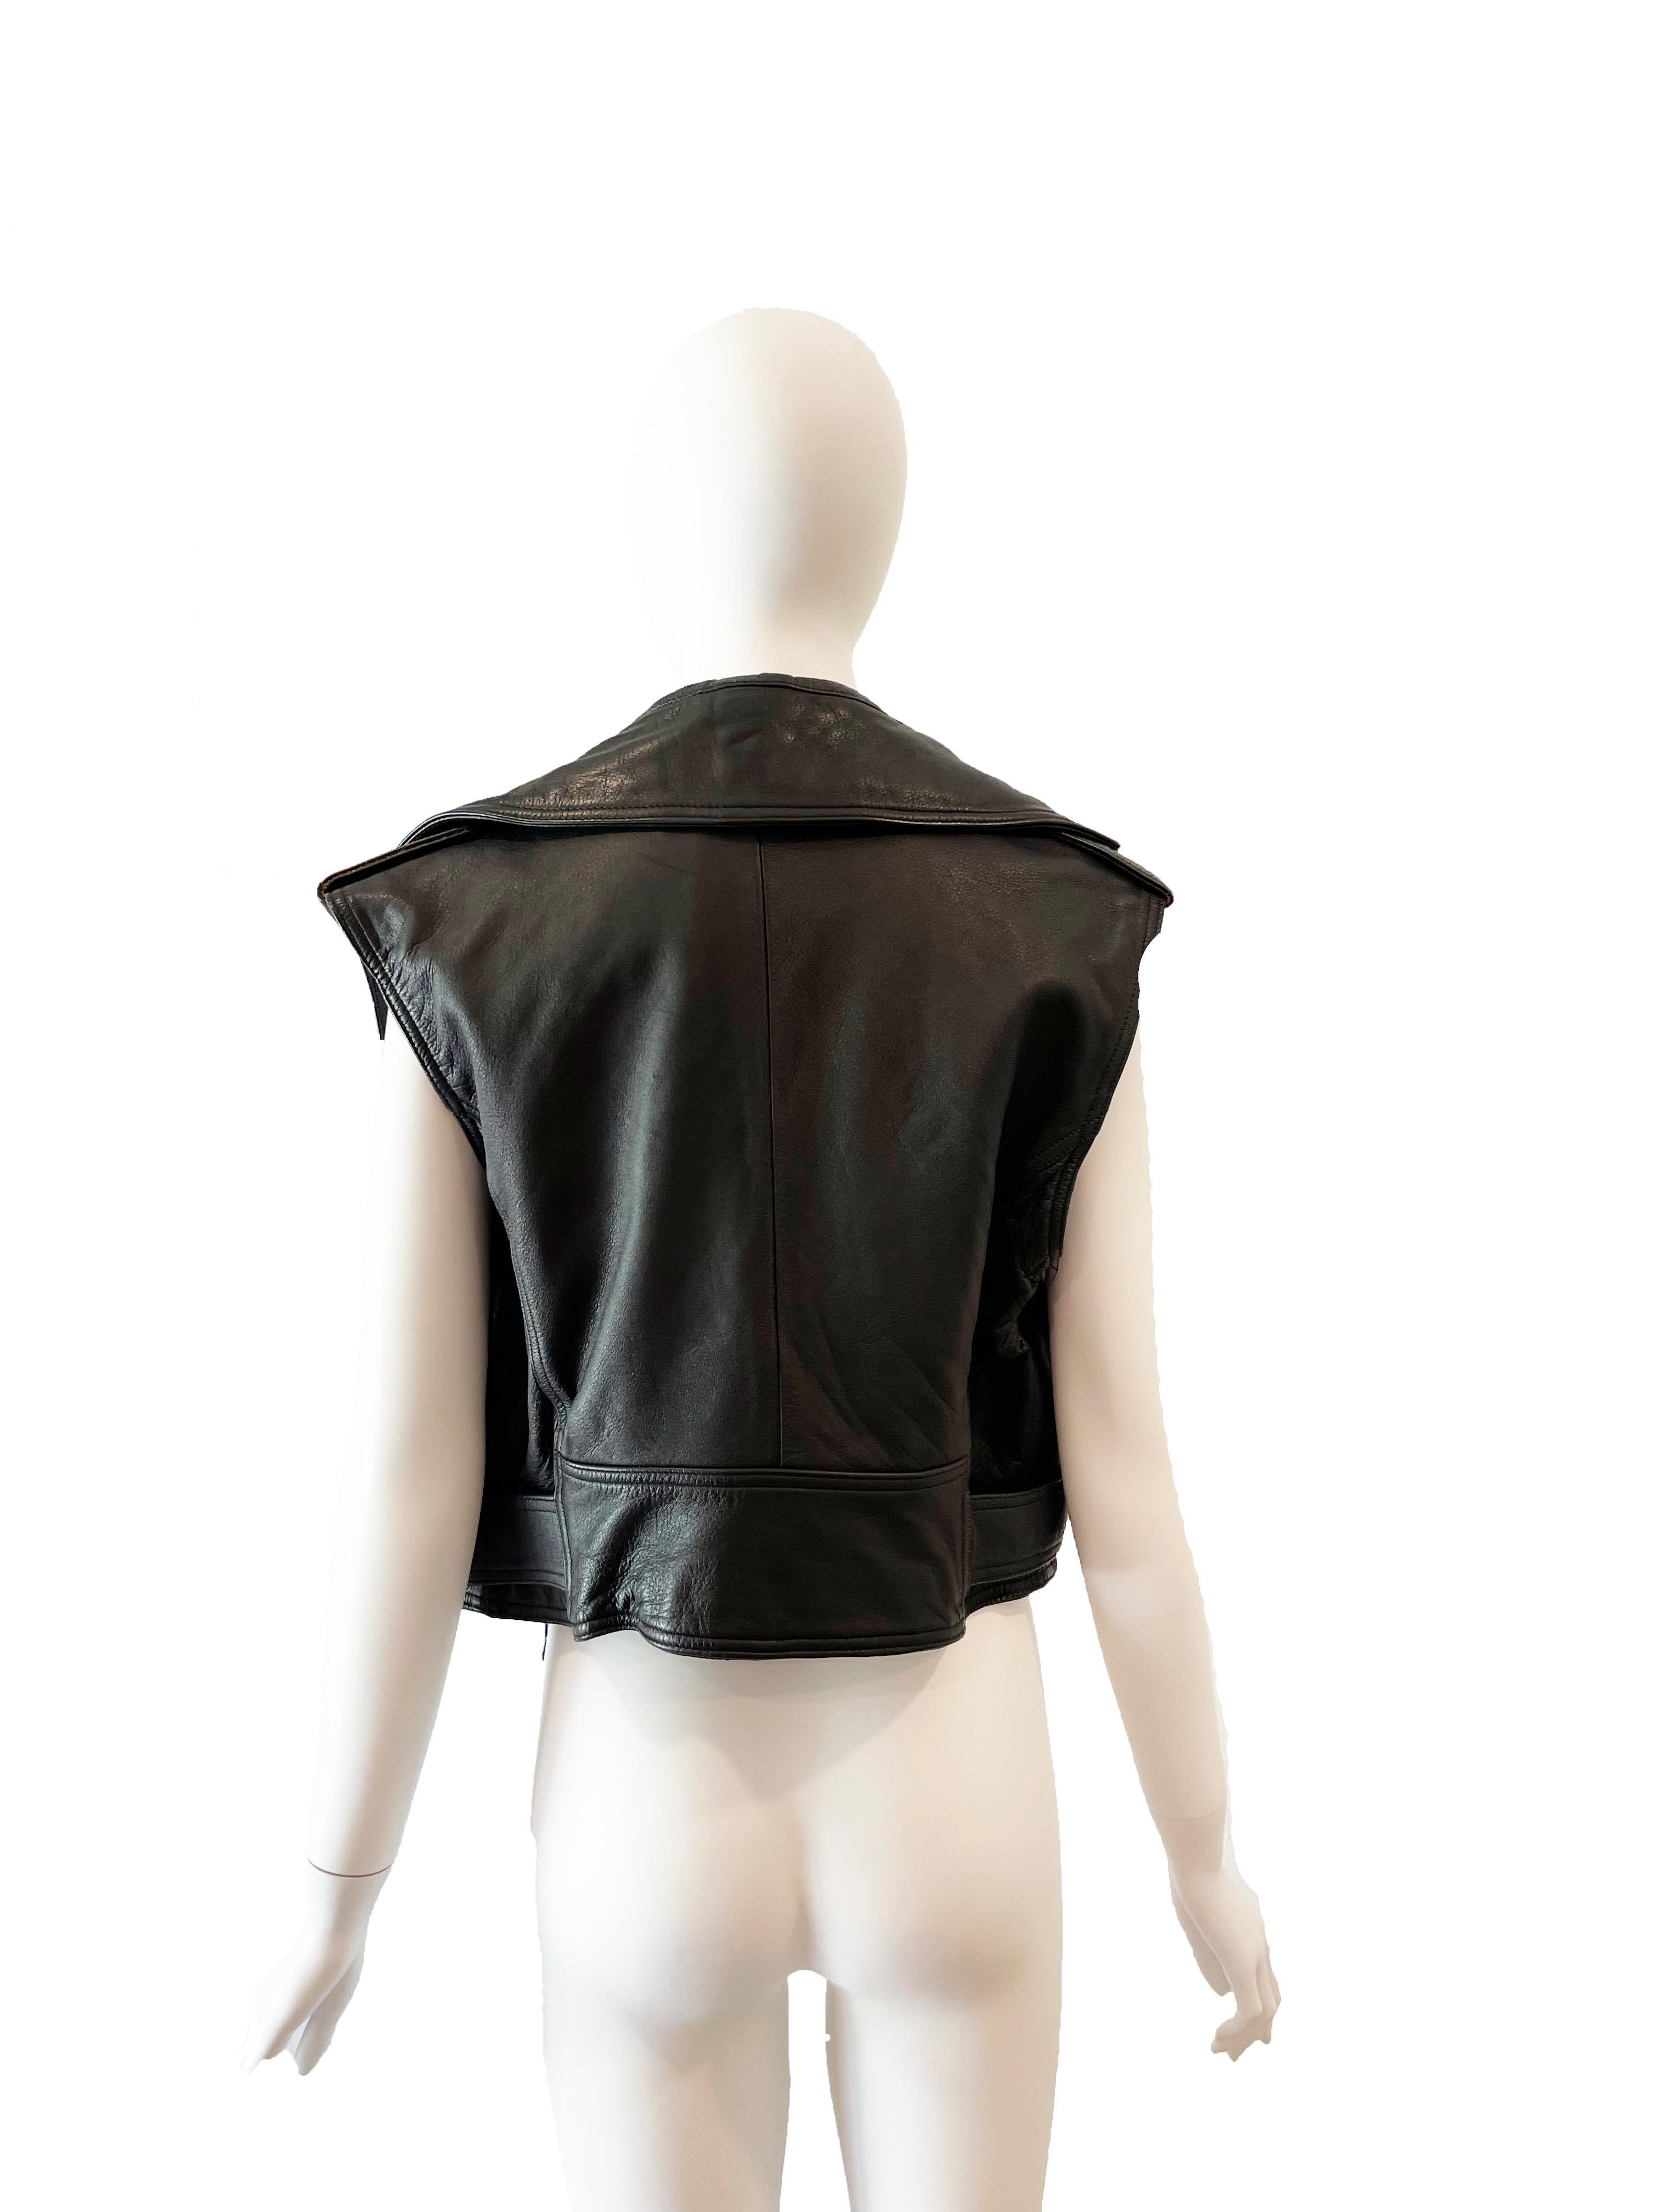 Jean Paul Gaultier Leather Jacket - 16 For Sale on 1stDibs | jean